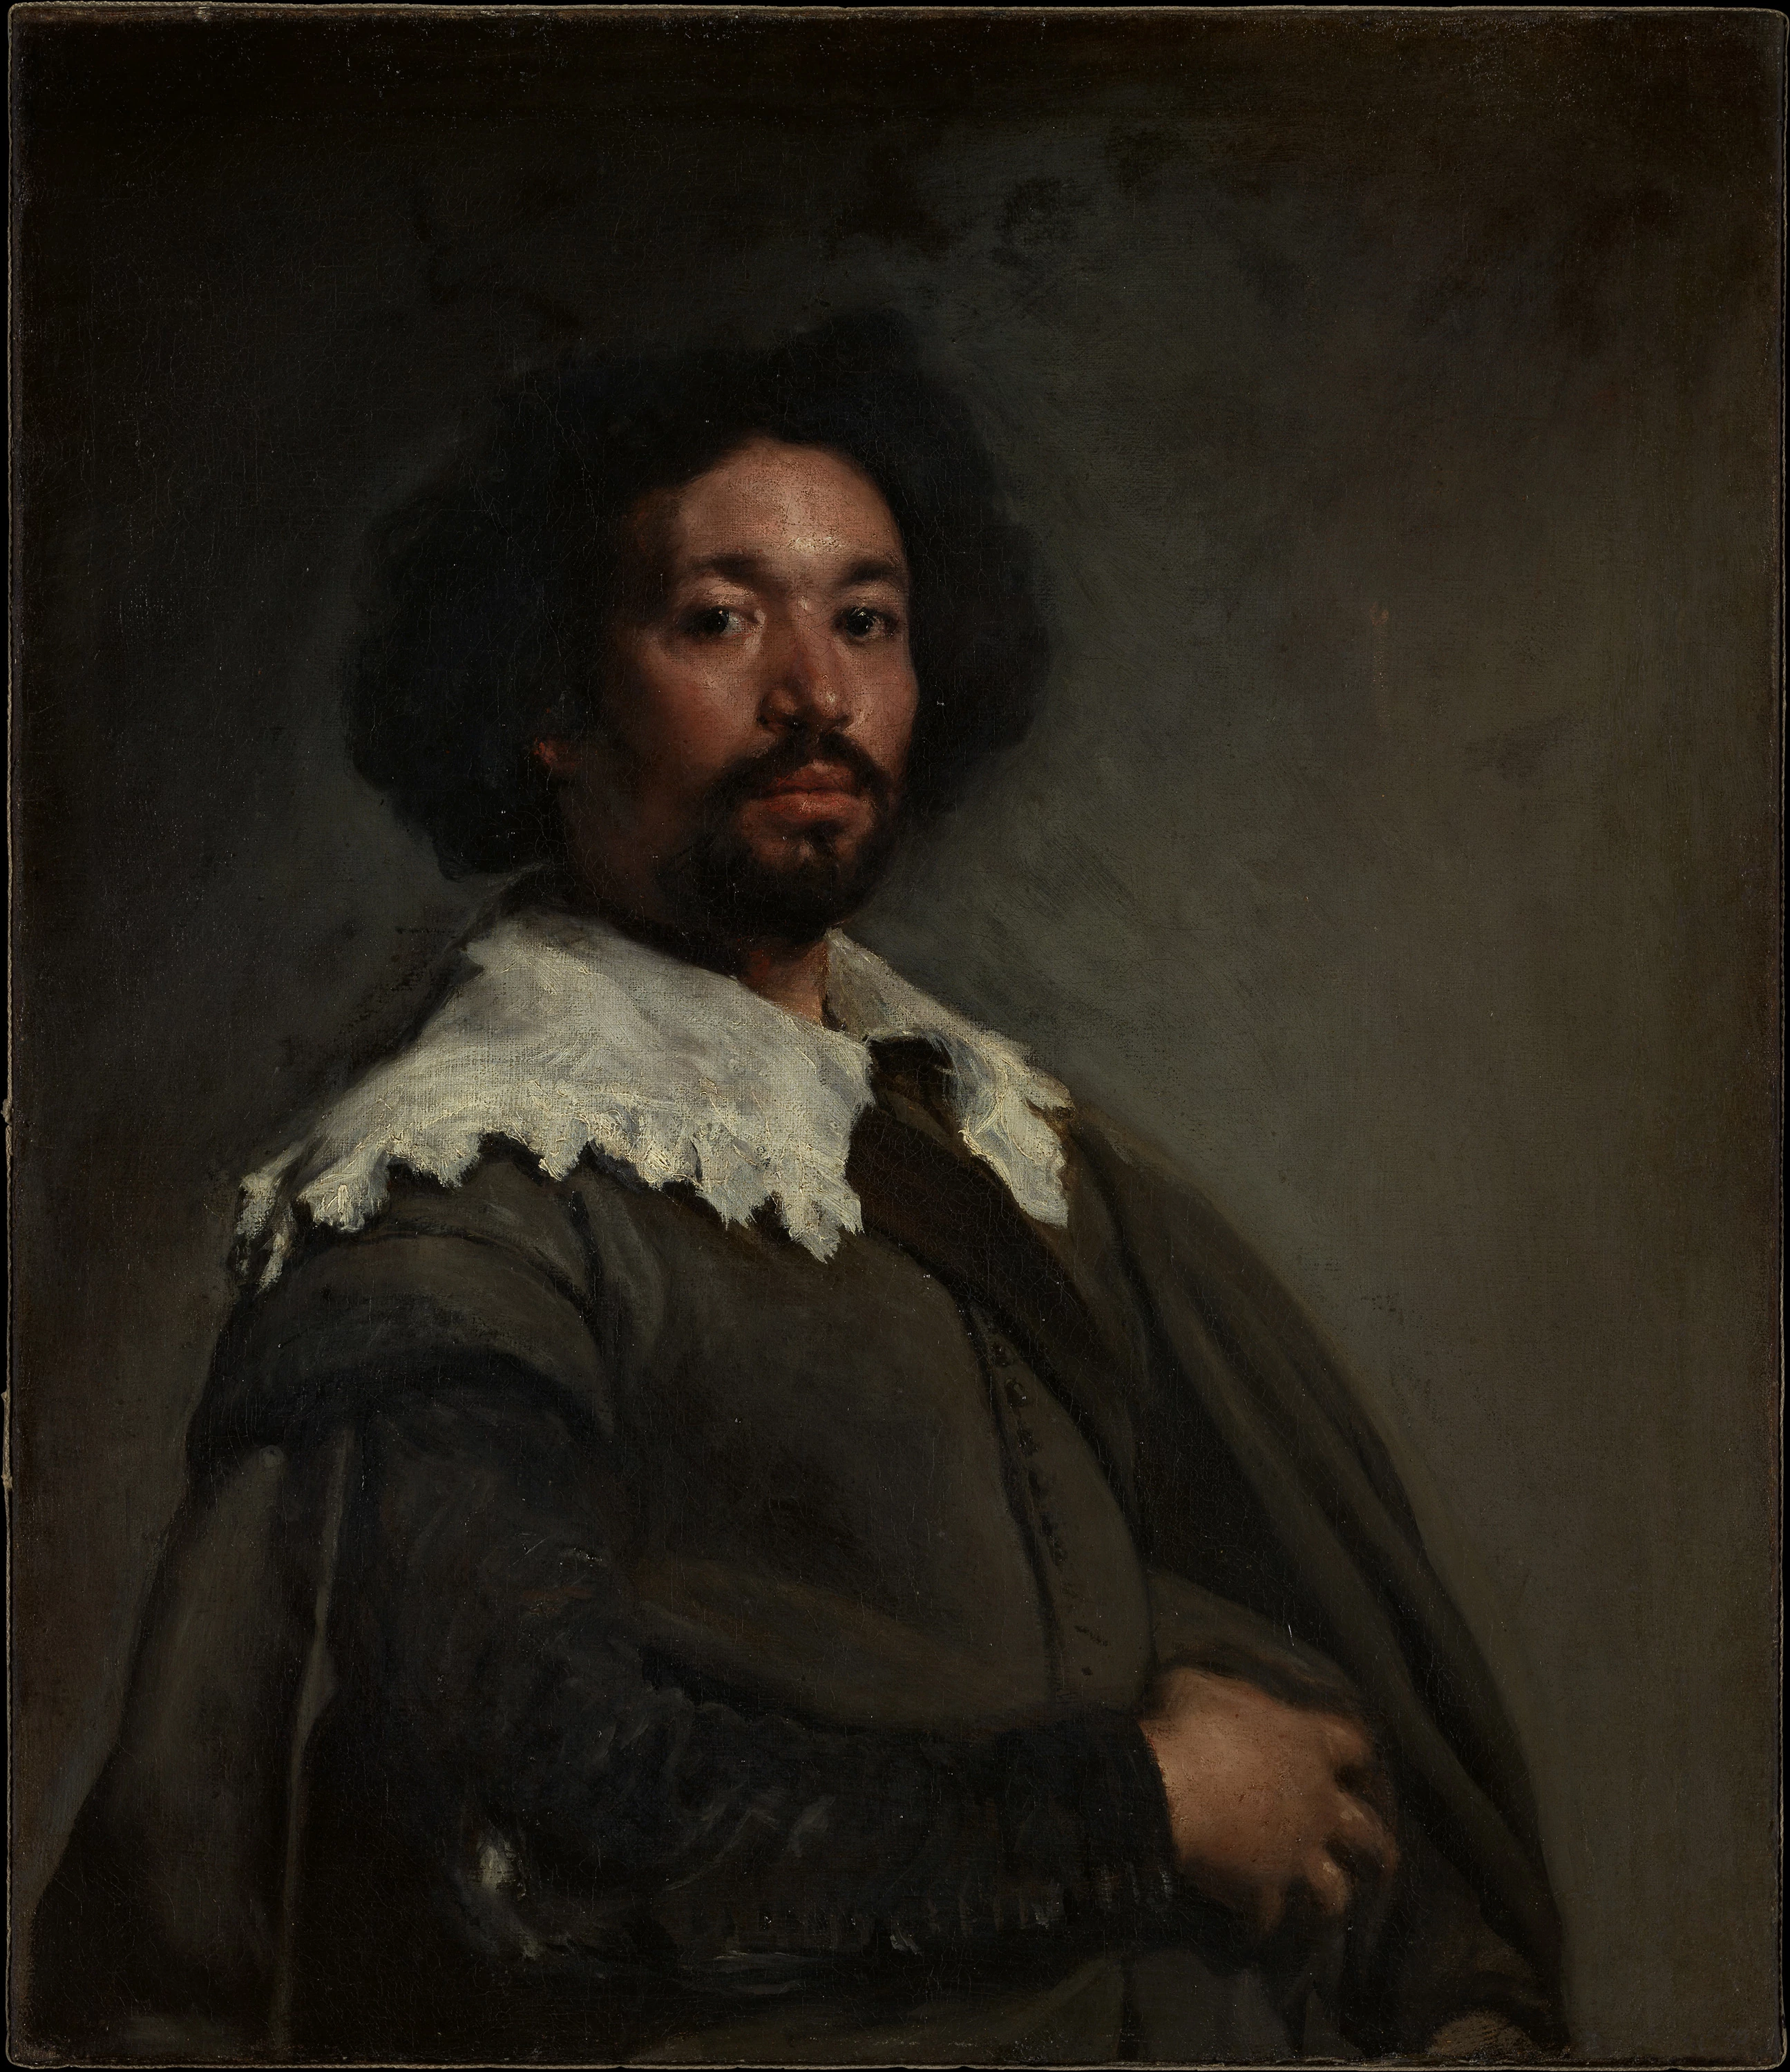 Juan de Pareja, Diego Velázquez